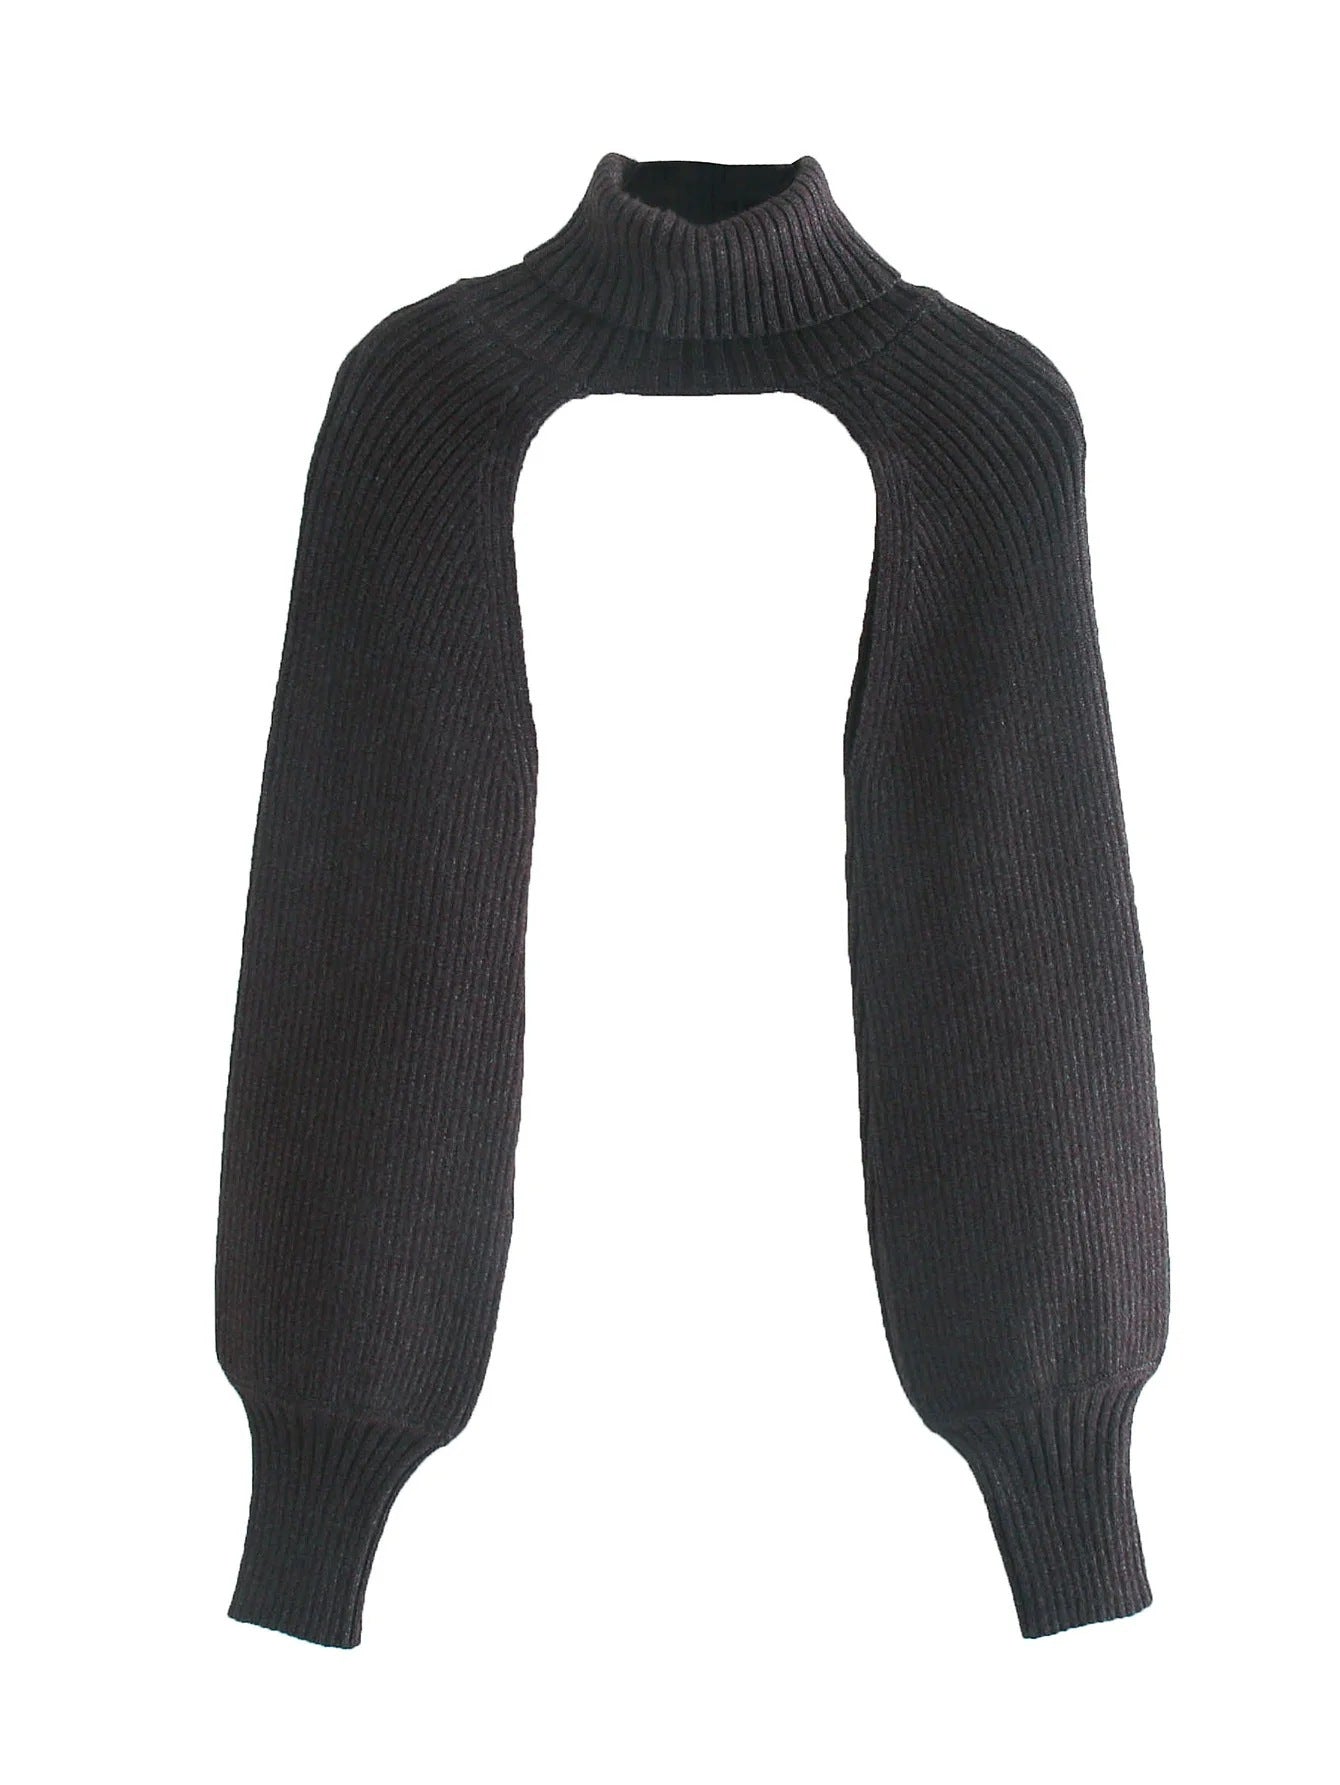 Retro Scheming Niche Design Knit Sweater Sleeves